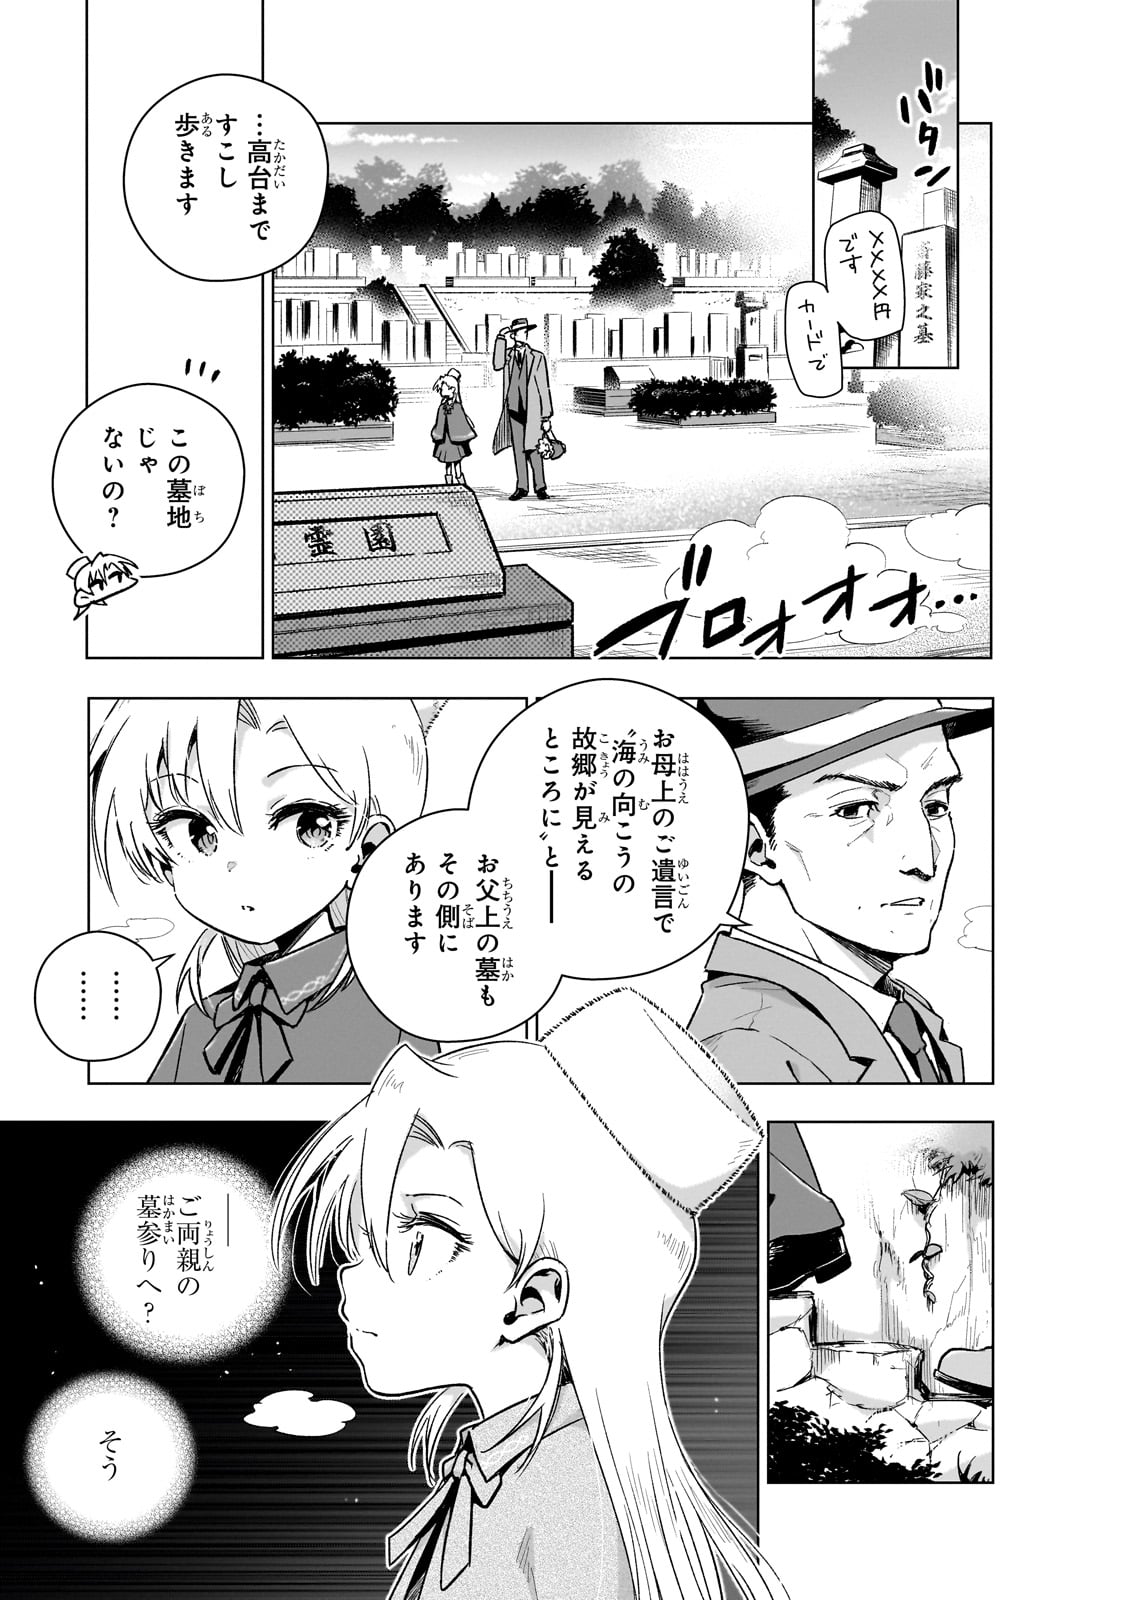 Gendai Shakai de Otome Game no Akuyaku Reijou wo suru no wa Chotto Taihen - Chapter 11 - Page 3